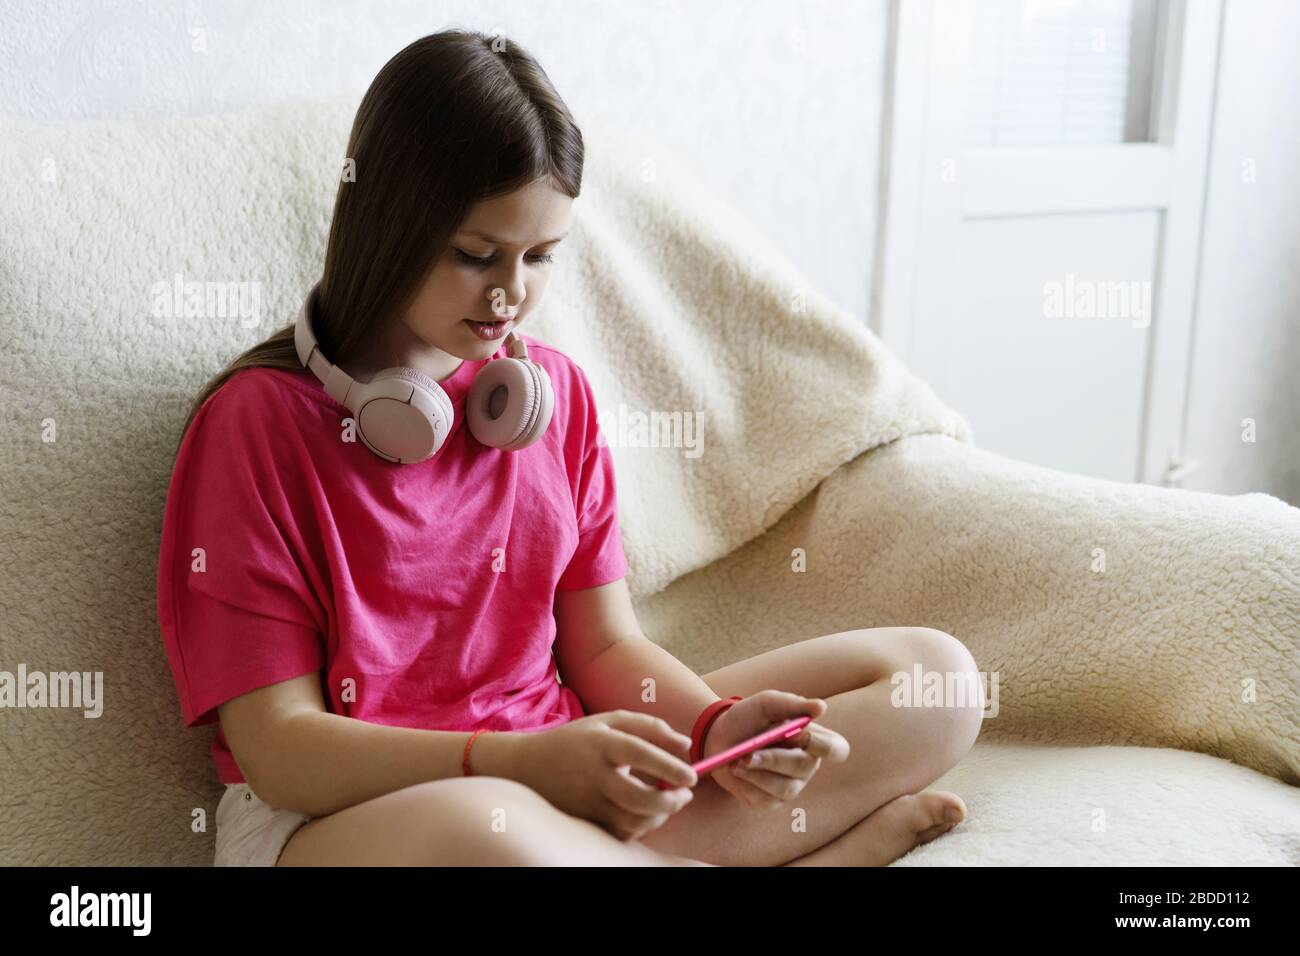 Alegre chica con auriculares de color rosa se sienta con un teléfono en la mano Foto de stock